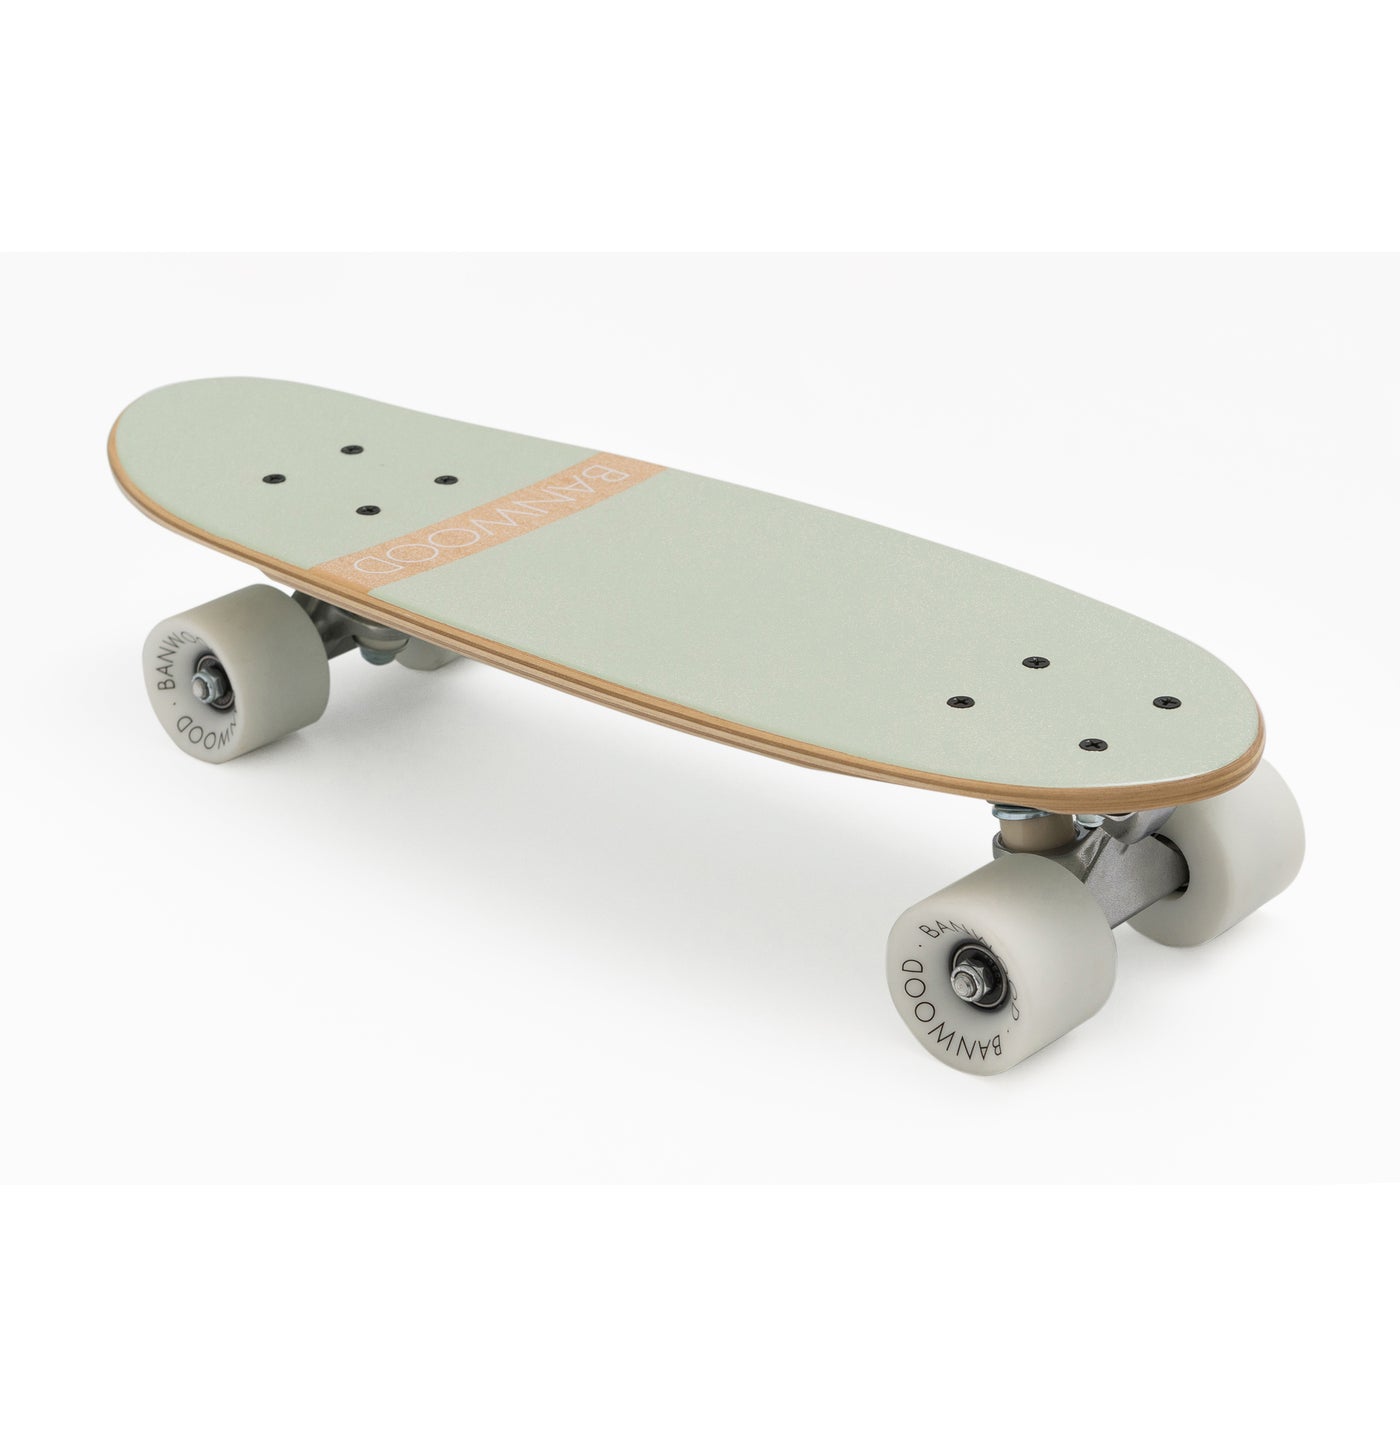 Skateboard, mint